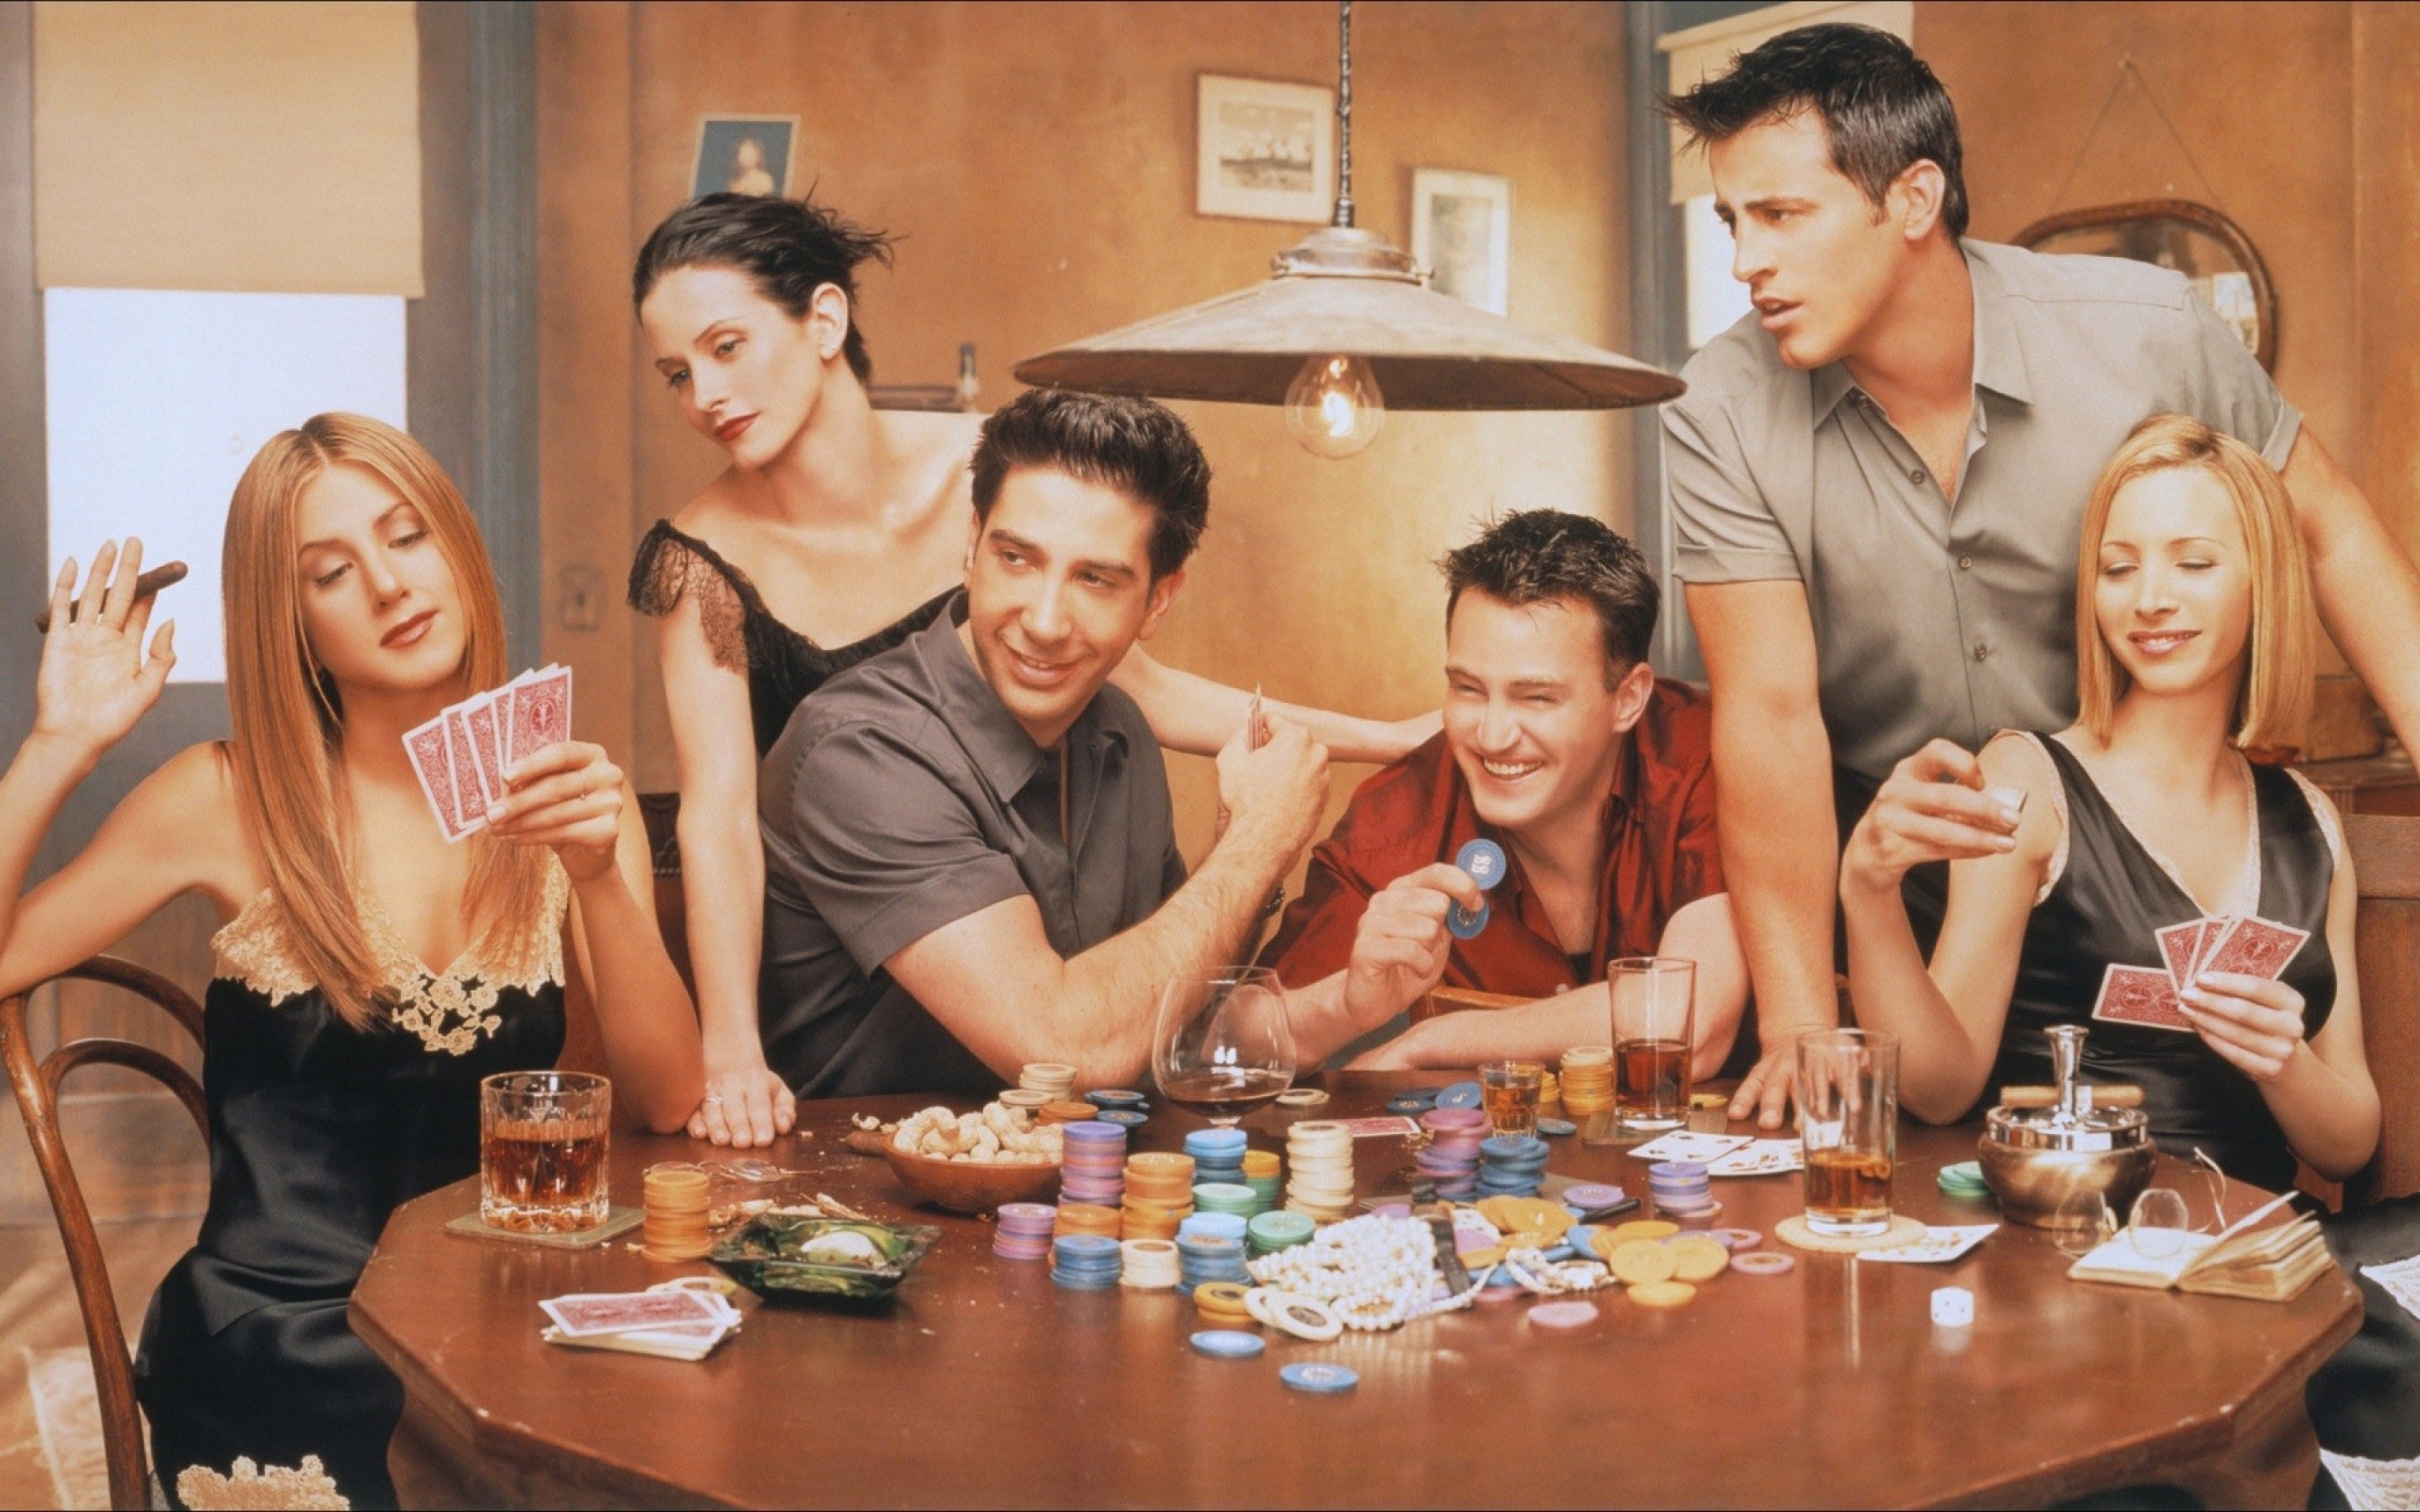 Друзья смотреть онлайн серия про покер пасьянс тройная косынка по 3 карты играть бесплатно без регистрации